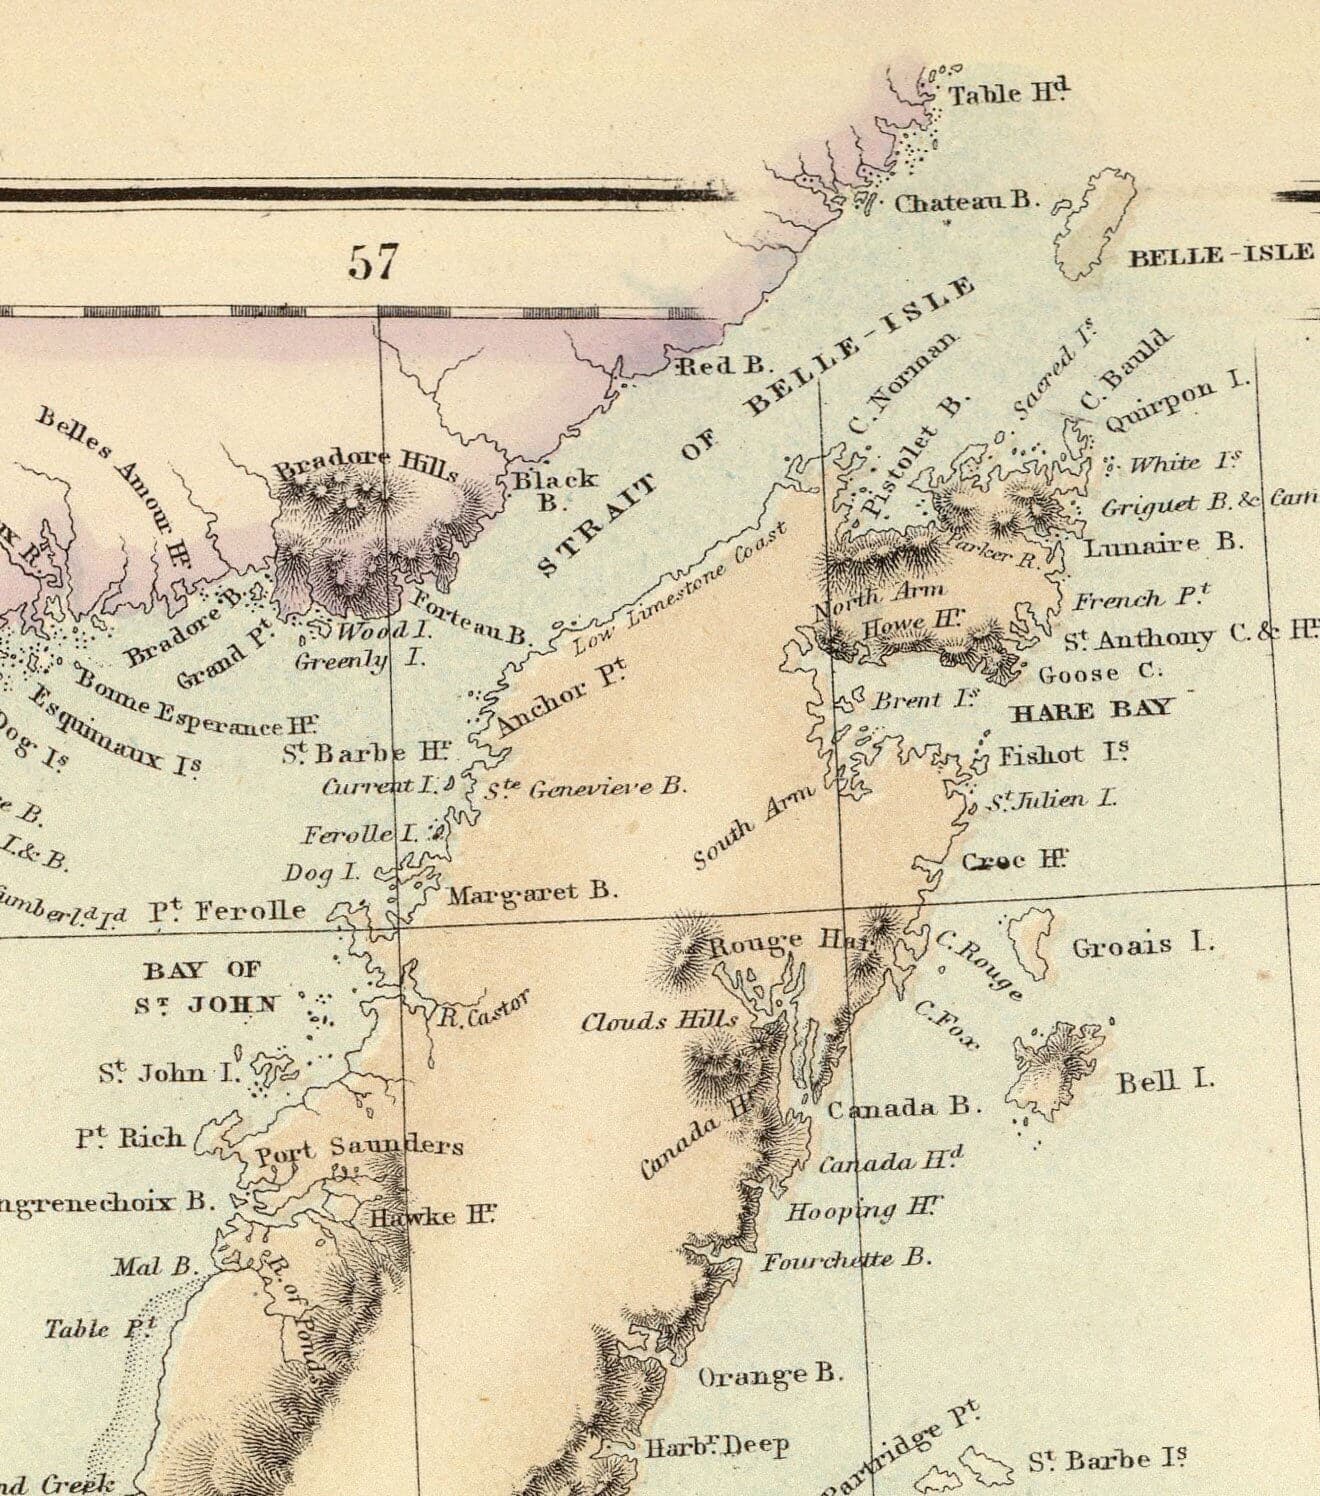 Ancienne carte de Terre-Neuve, Nouvelle-Écosse et Nouveau-Brunswick, 1872 par Fullarton - Canada, Amérique du Nord britannique coloniale